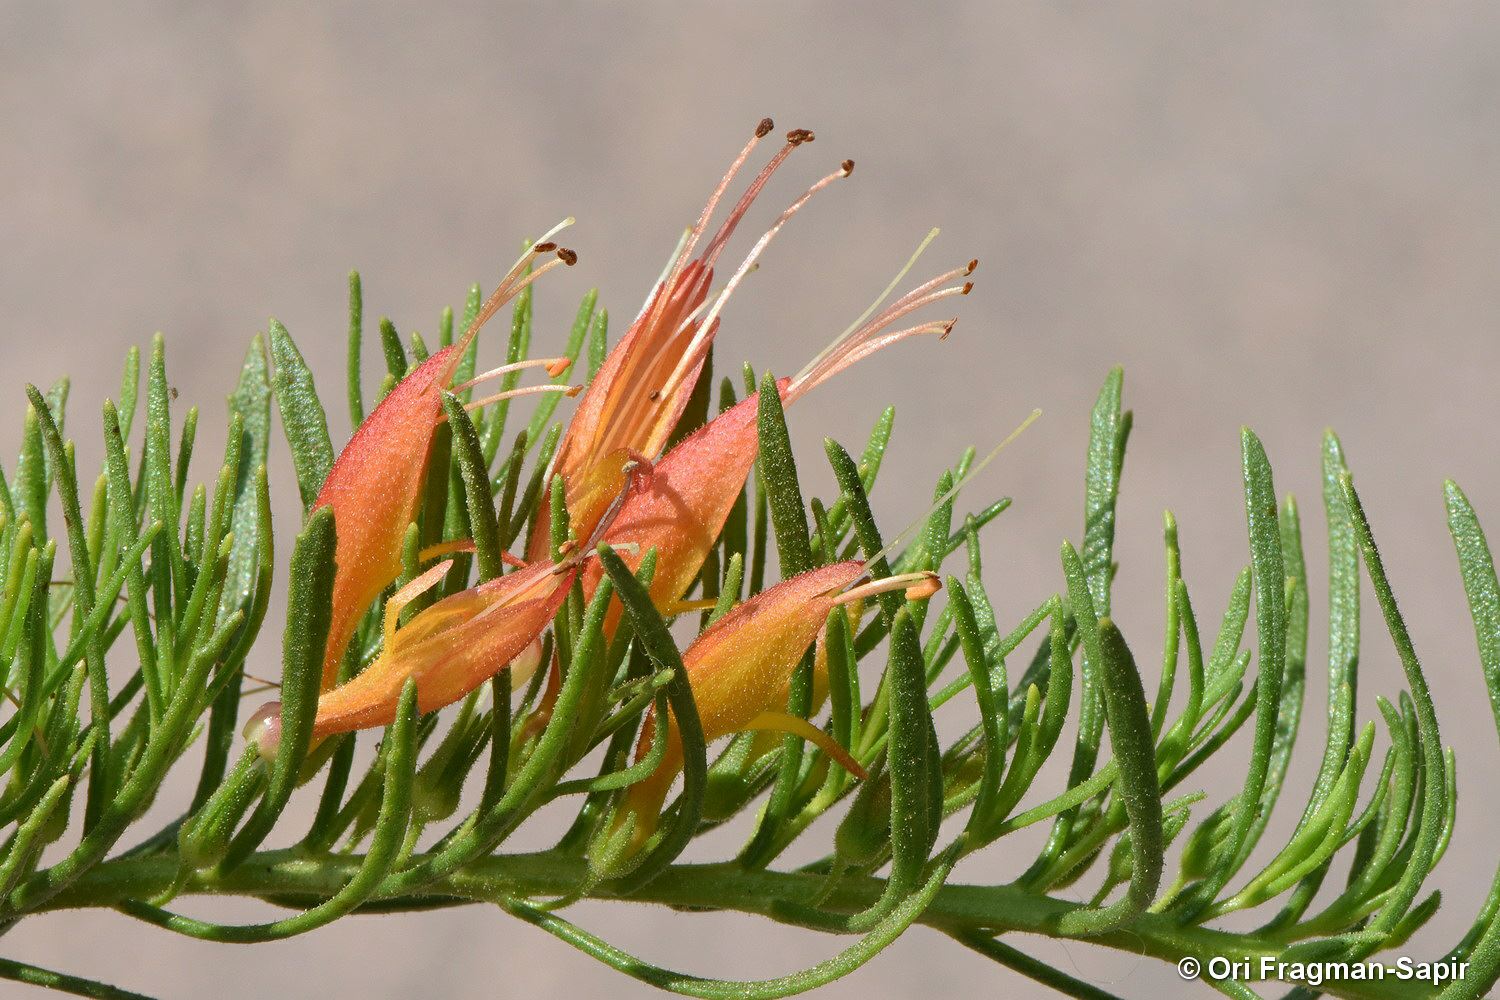 Eremophila subteretifolia - Lake King Eremophila, ישימונית אשונה, ישימונית אשונה